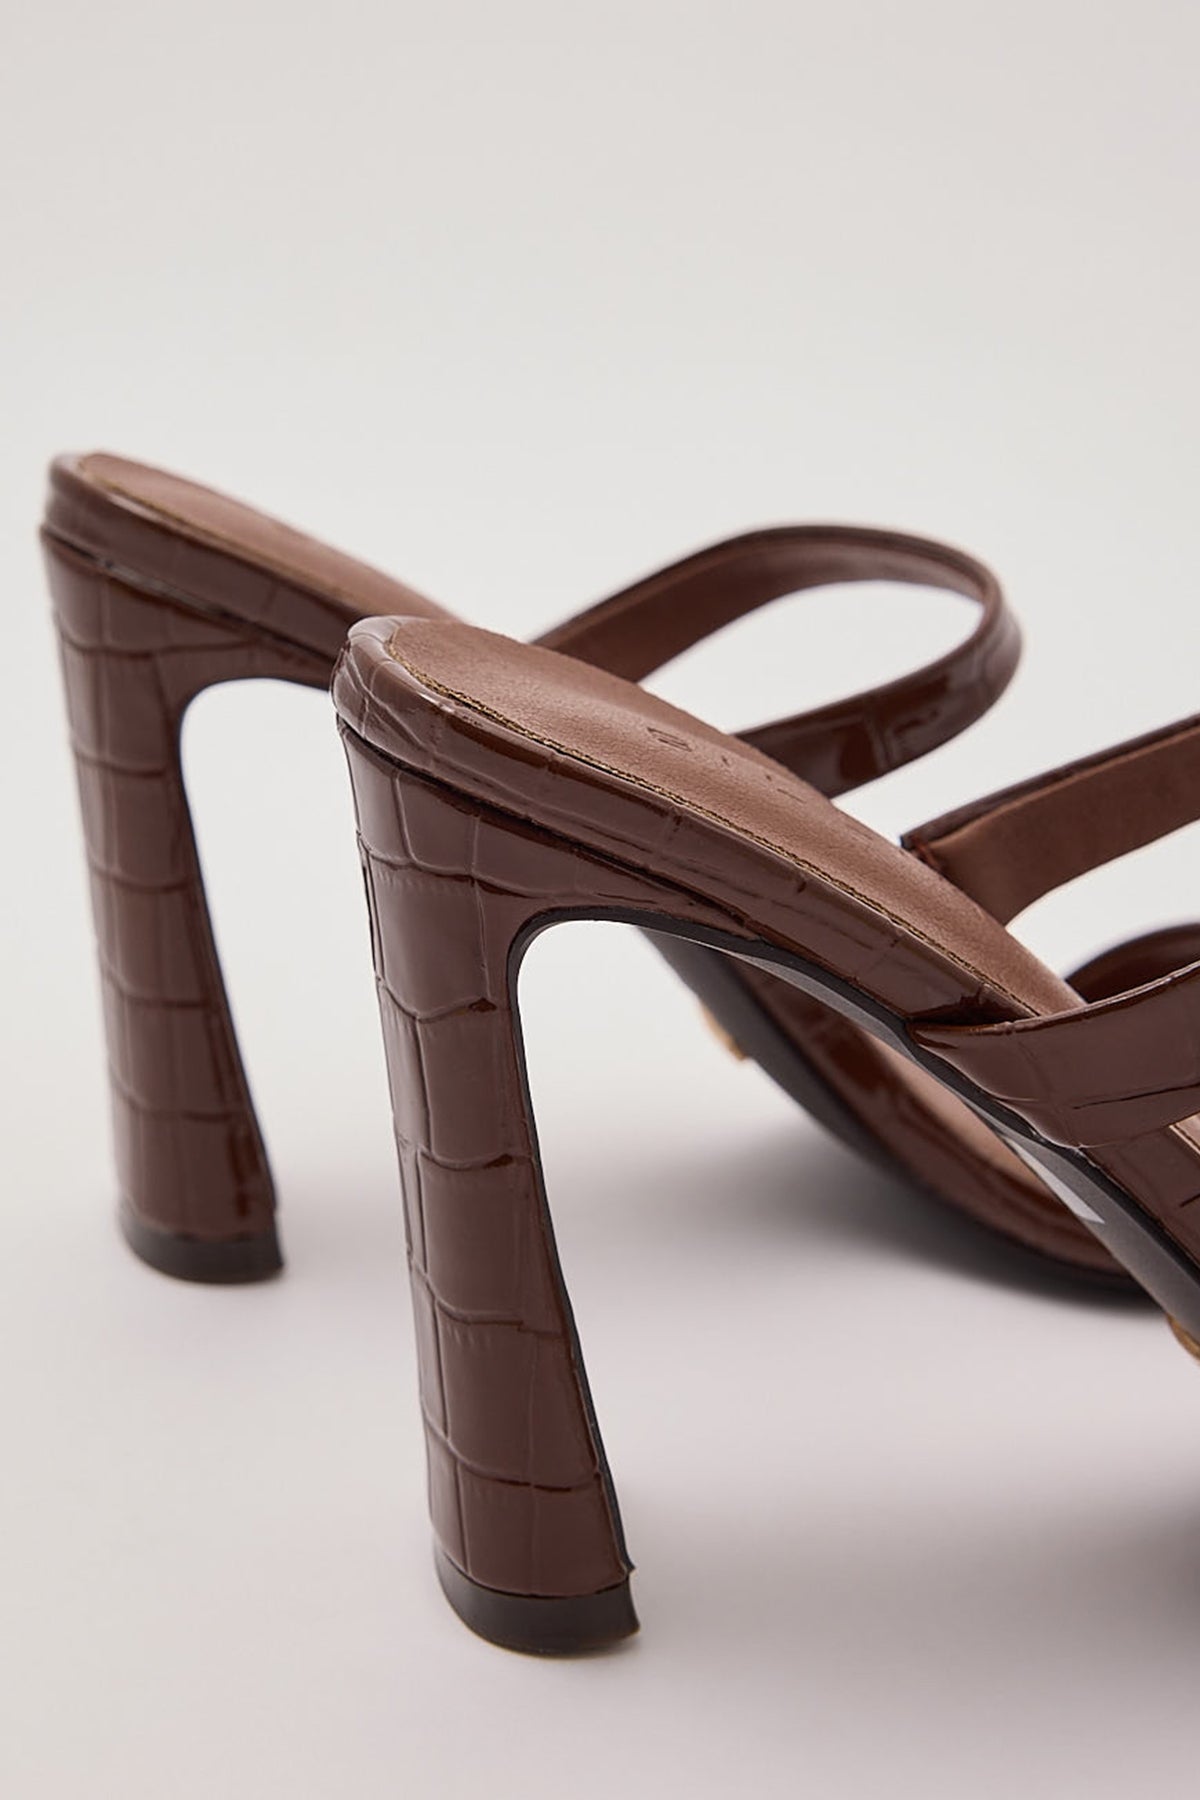 Billini Izalia Heel Chocolate Patent Croc